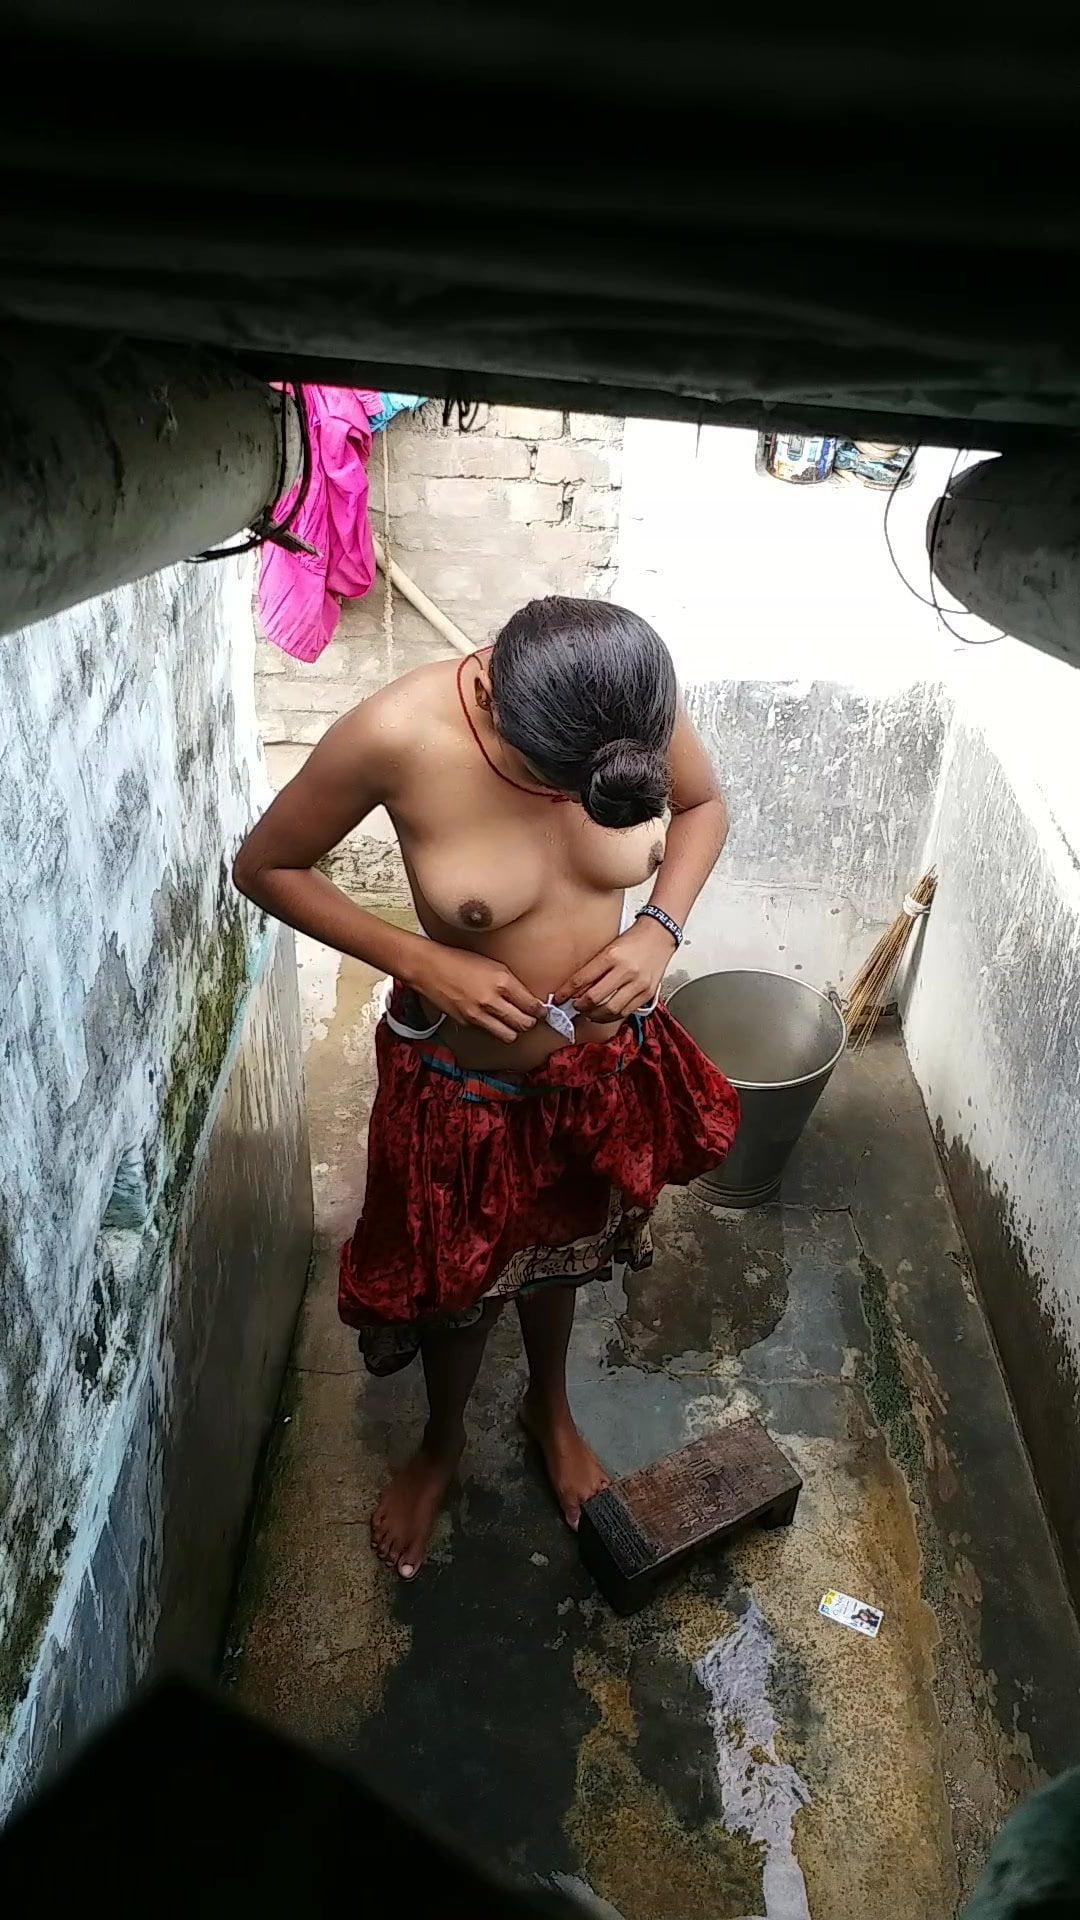 Sixeboor - Saali Ki Chudai Bathroom Me, Free Indian Porn cc: xHamster